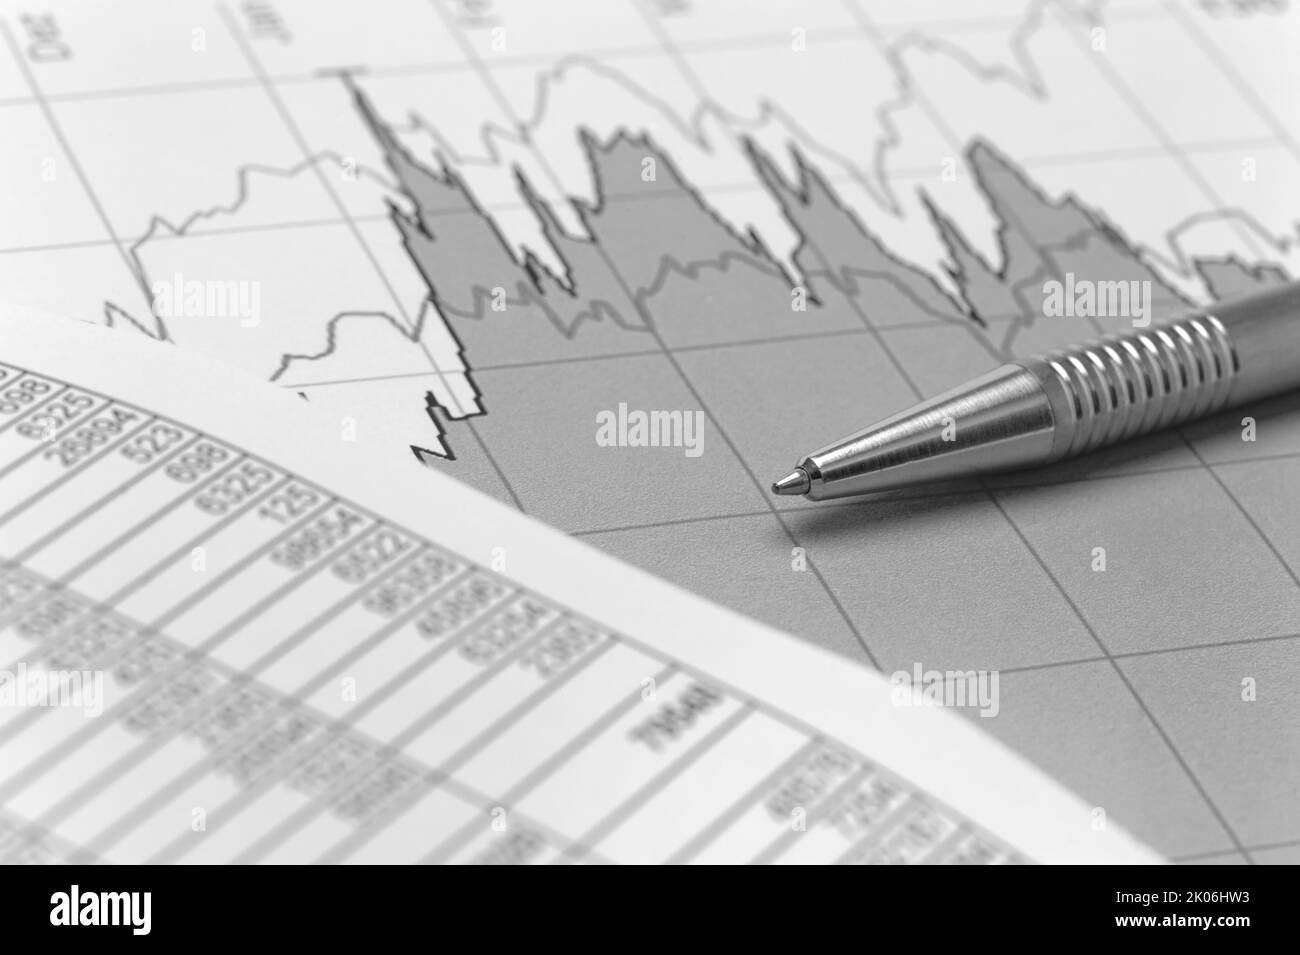 Finanzen und Wirtschaft mit Diagramm Stockfoto